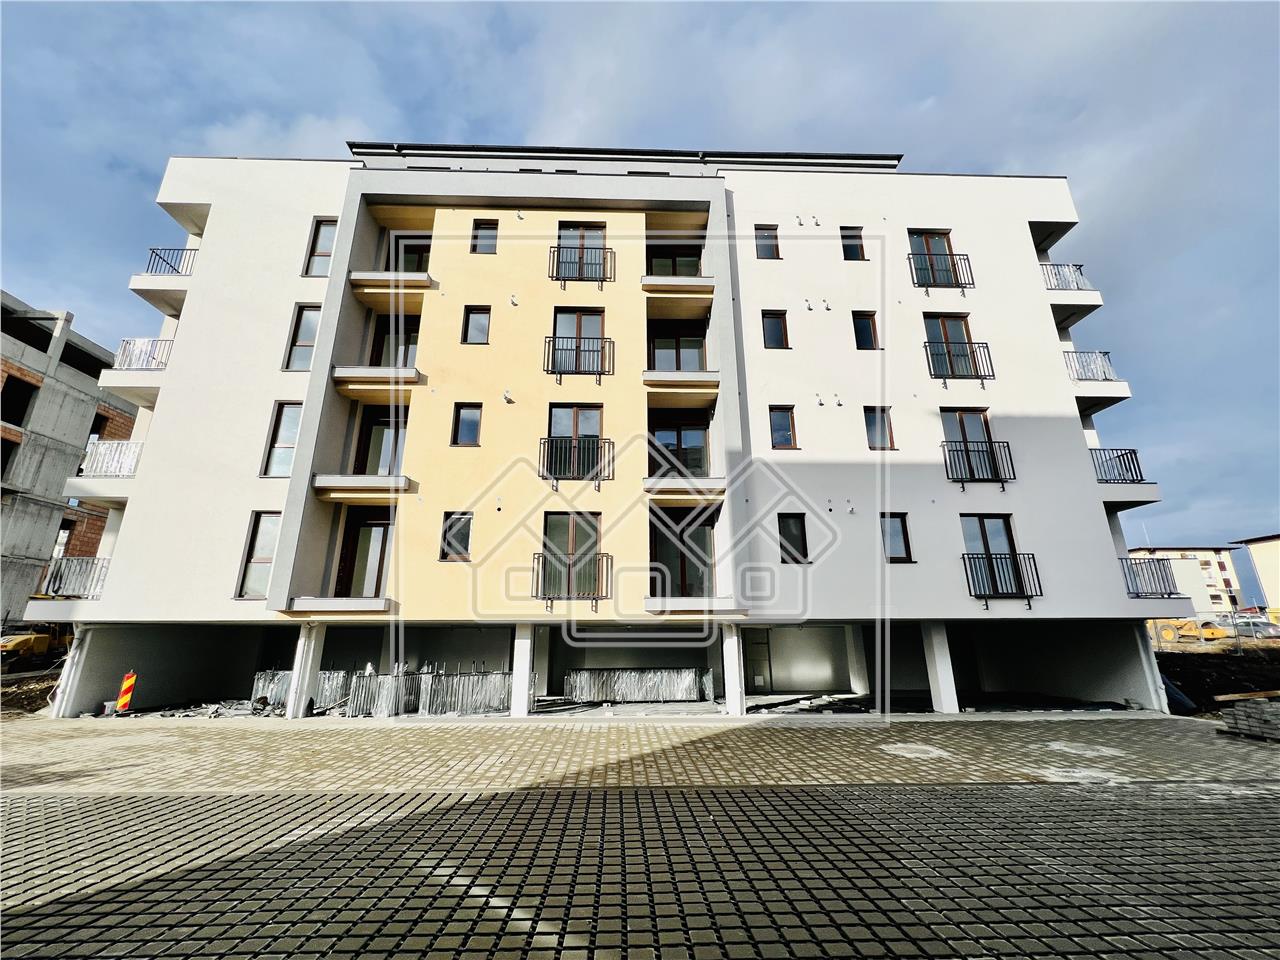 Wohnung zu verkaufen in Sibiu - 2 Loggien - Neppendorf Residence